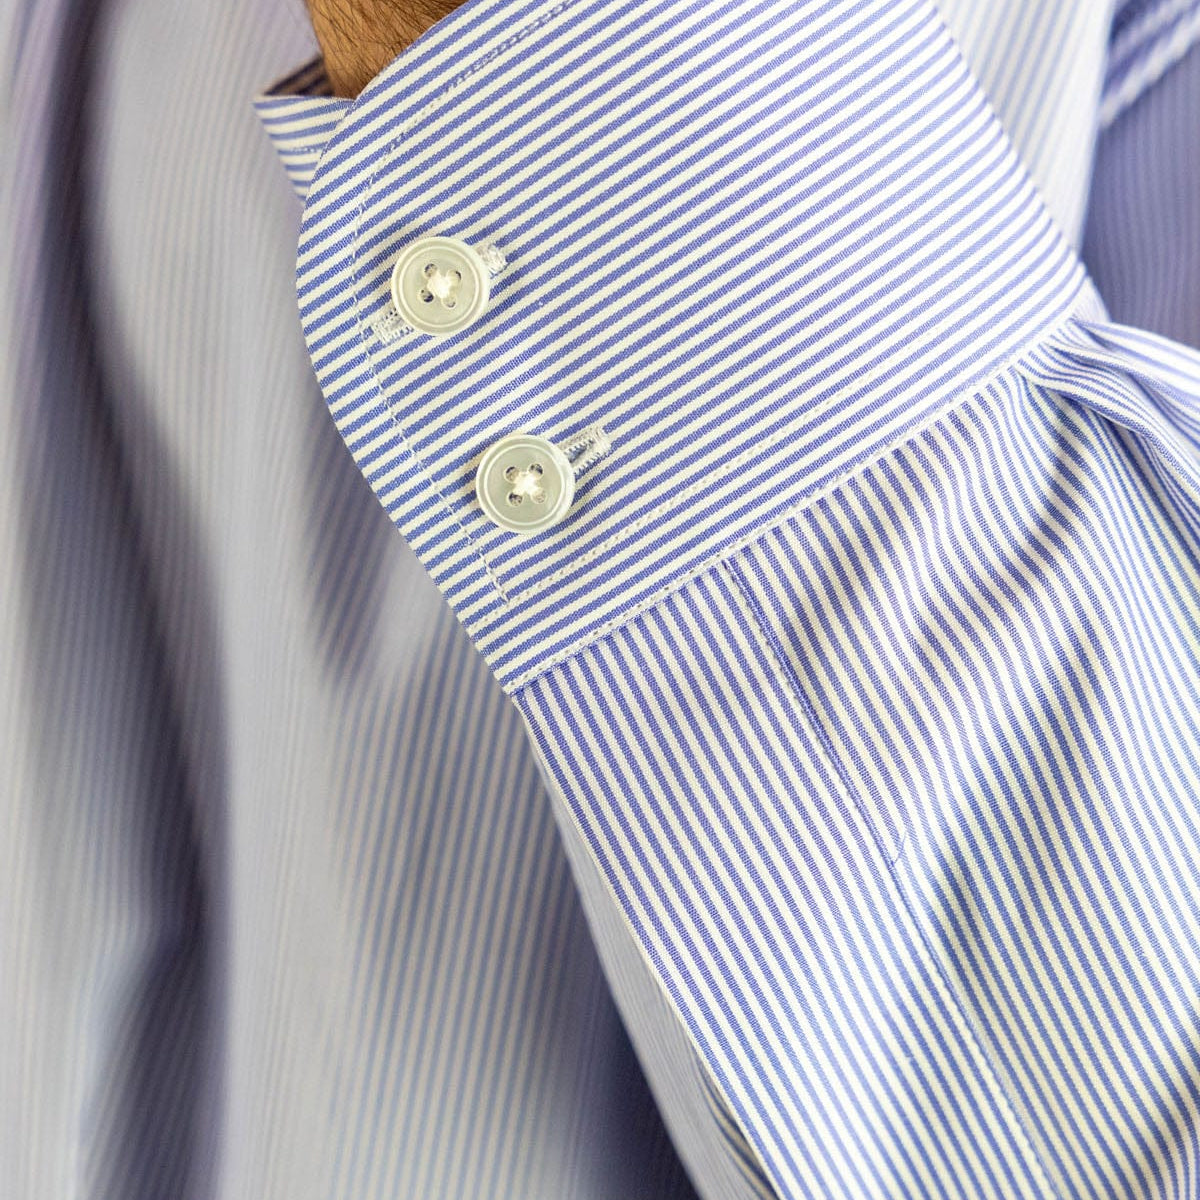 Classic Fit, Cut-away Collar, 2 Button Cuff Shirt in a Blue & White Fine Bengal Poplin Cotton - Hilditch & Key